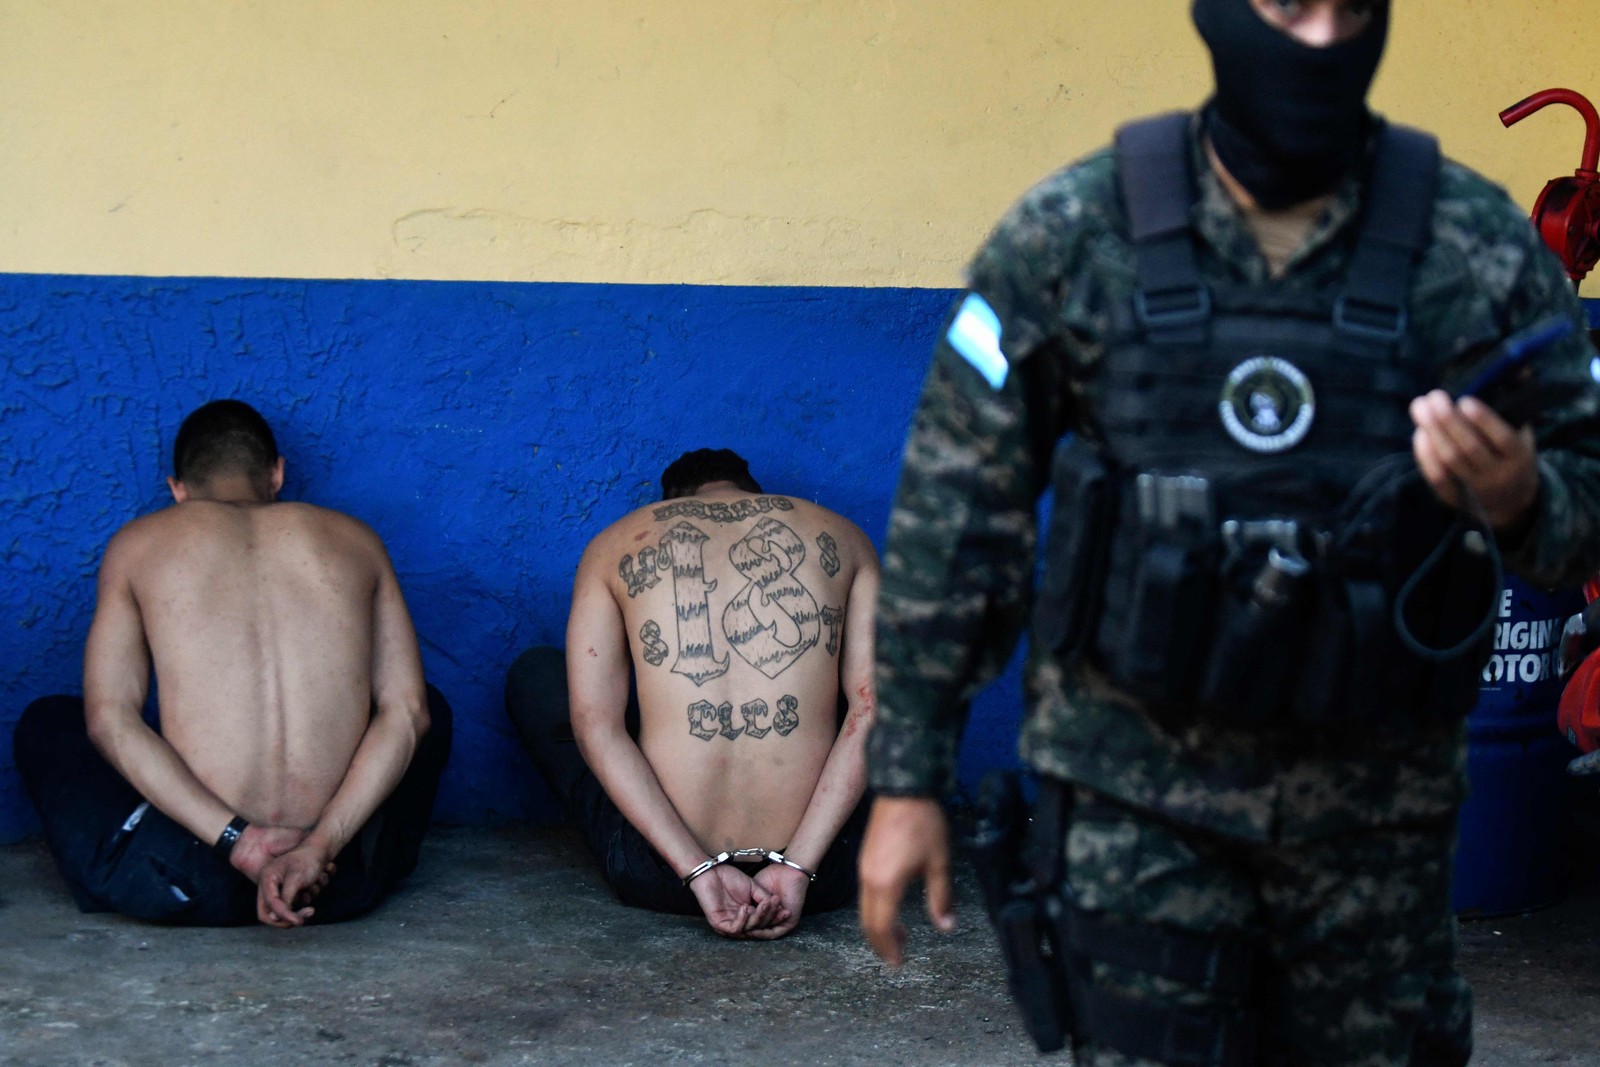 Integrantes da quadrilha Barrio 18 são apresentados à imprensa pela Polícia Militar de Ordem Pública (PMOP), capturados durante confrontos em Tegucigalpa, Honduras — Foto: ORLANDO SIERRA / AFP